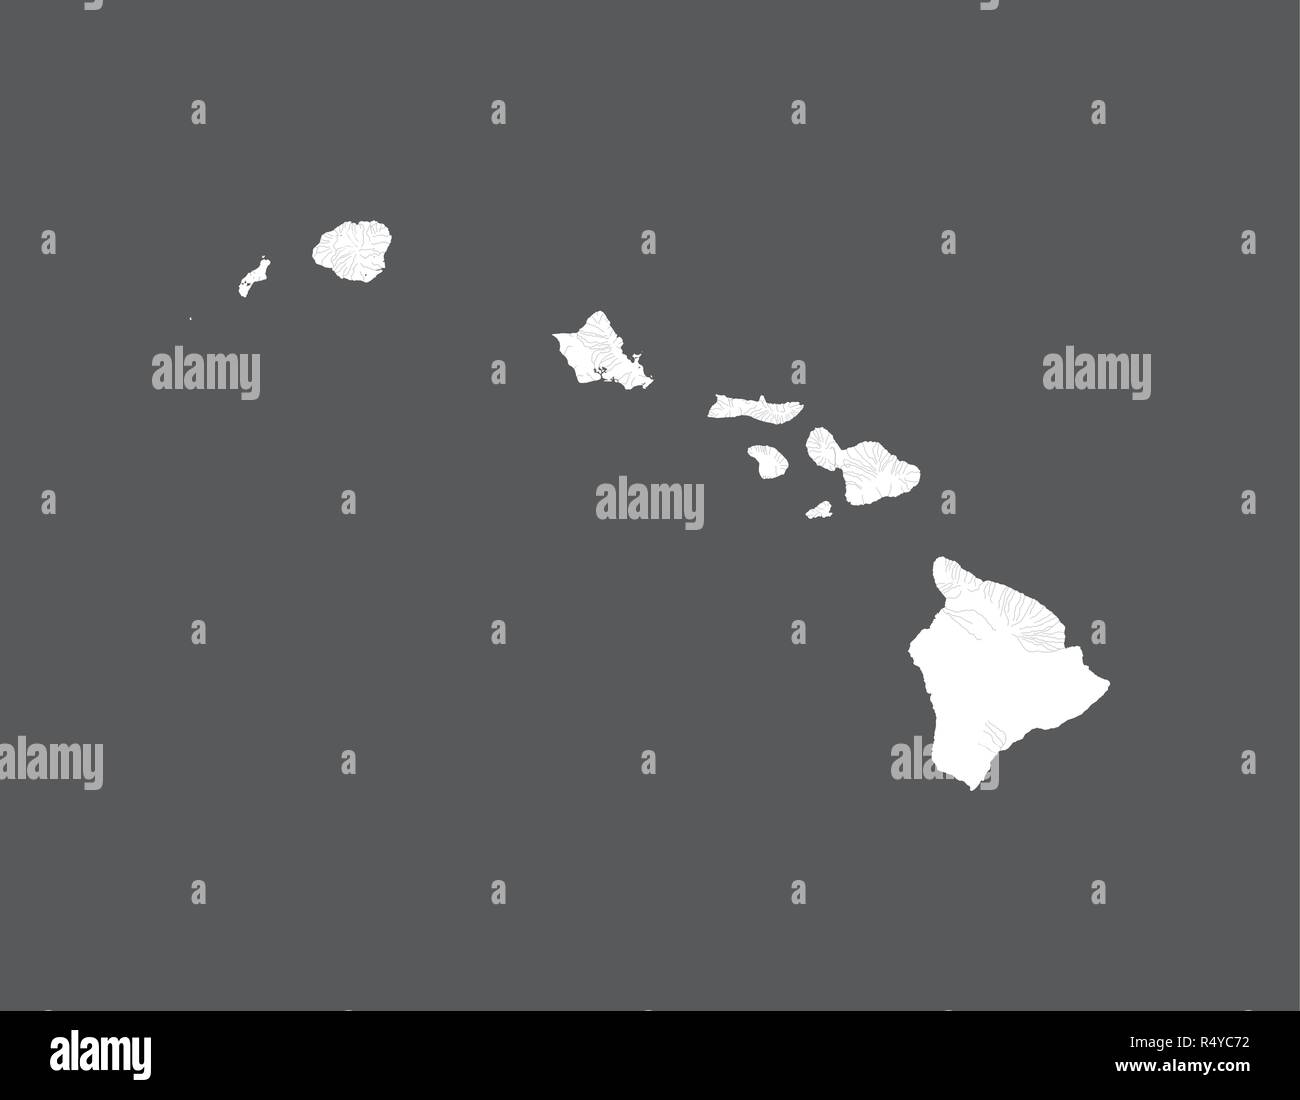 Les états américains - carte d'Hawaï. Fait main. Les rivières et lacs sont indiqués. Merci de regarder mes autres images de la série cartographique - ils sont tous très amples Illustration de Vecteur